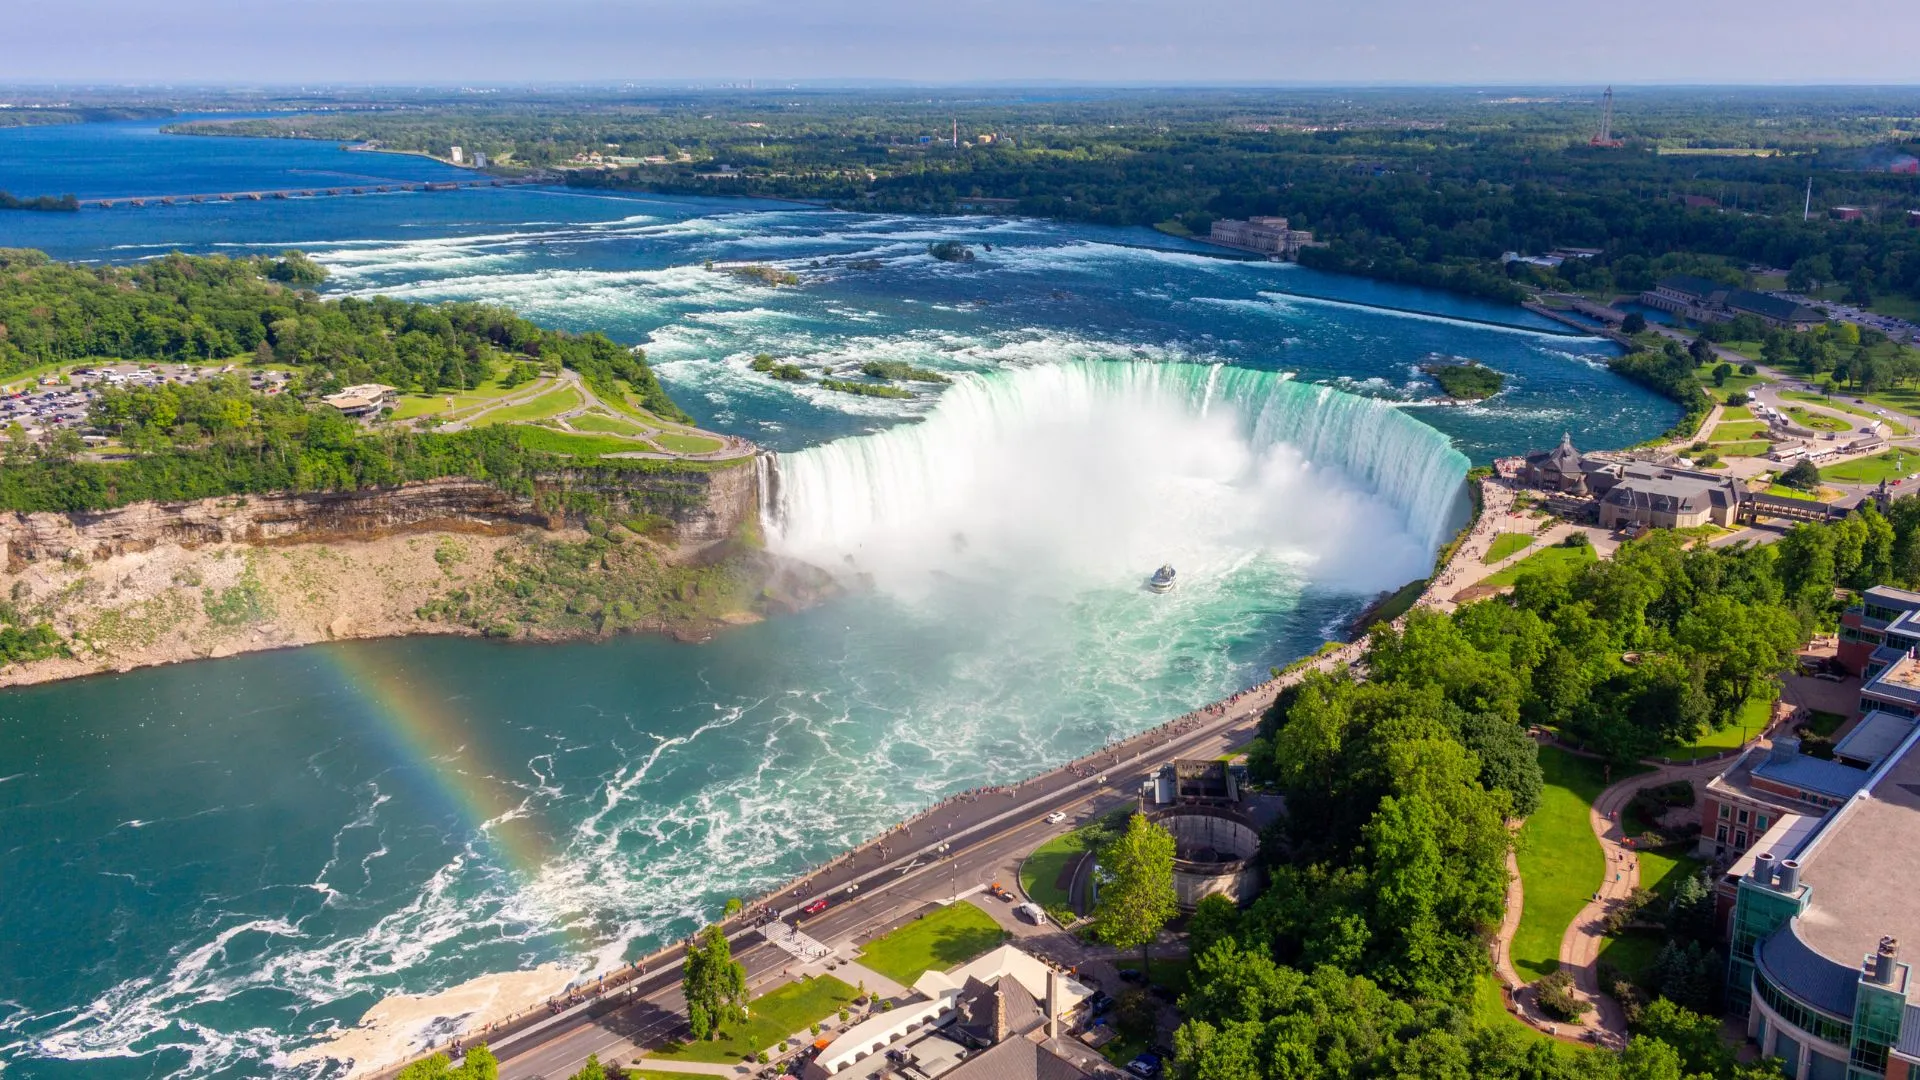 Great Lakes road trip stop at Niagara falls